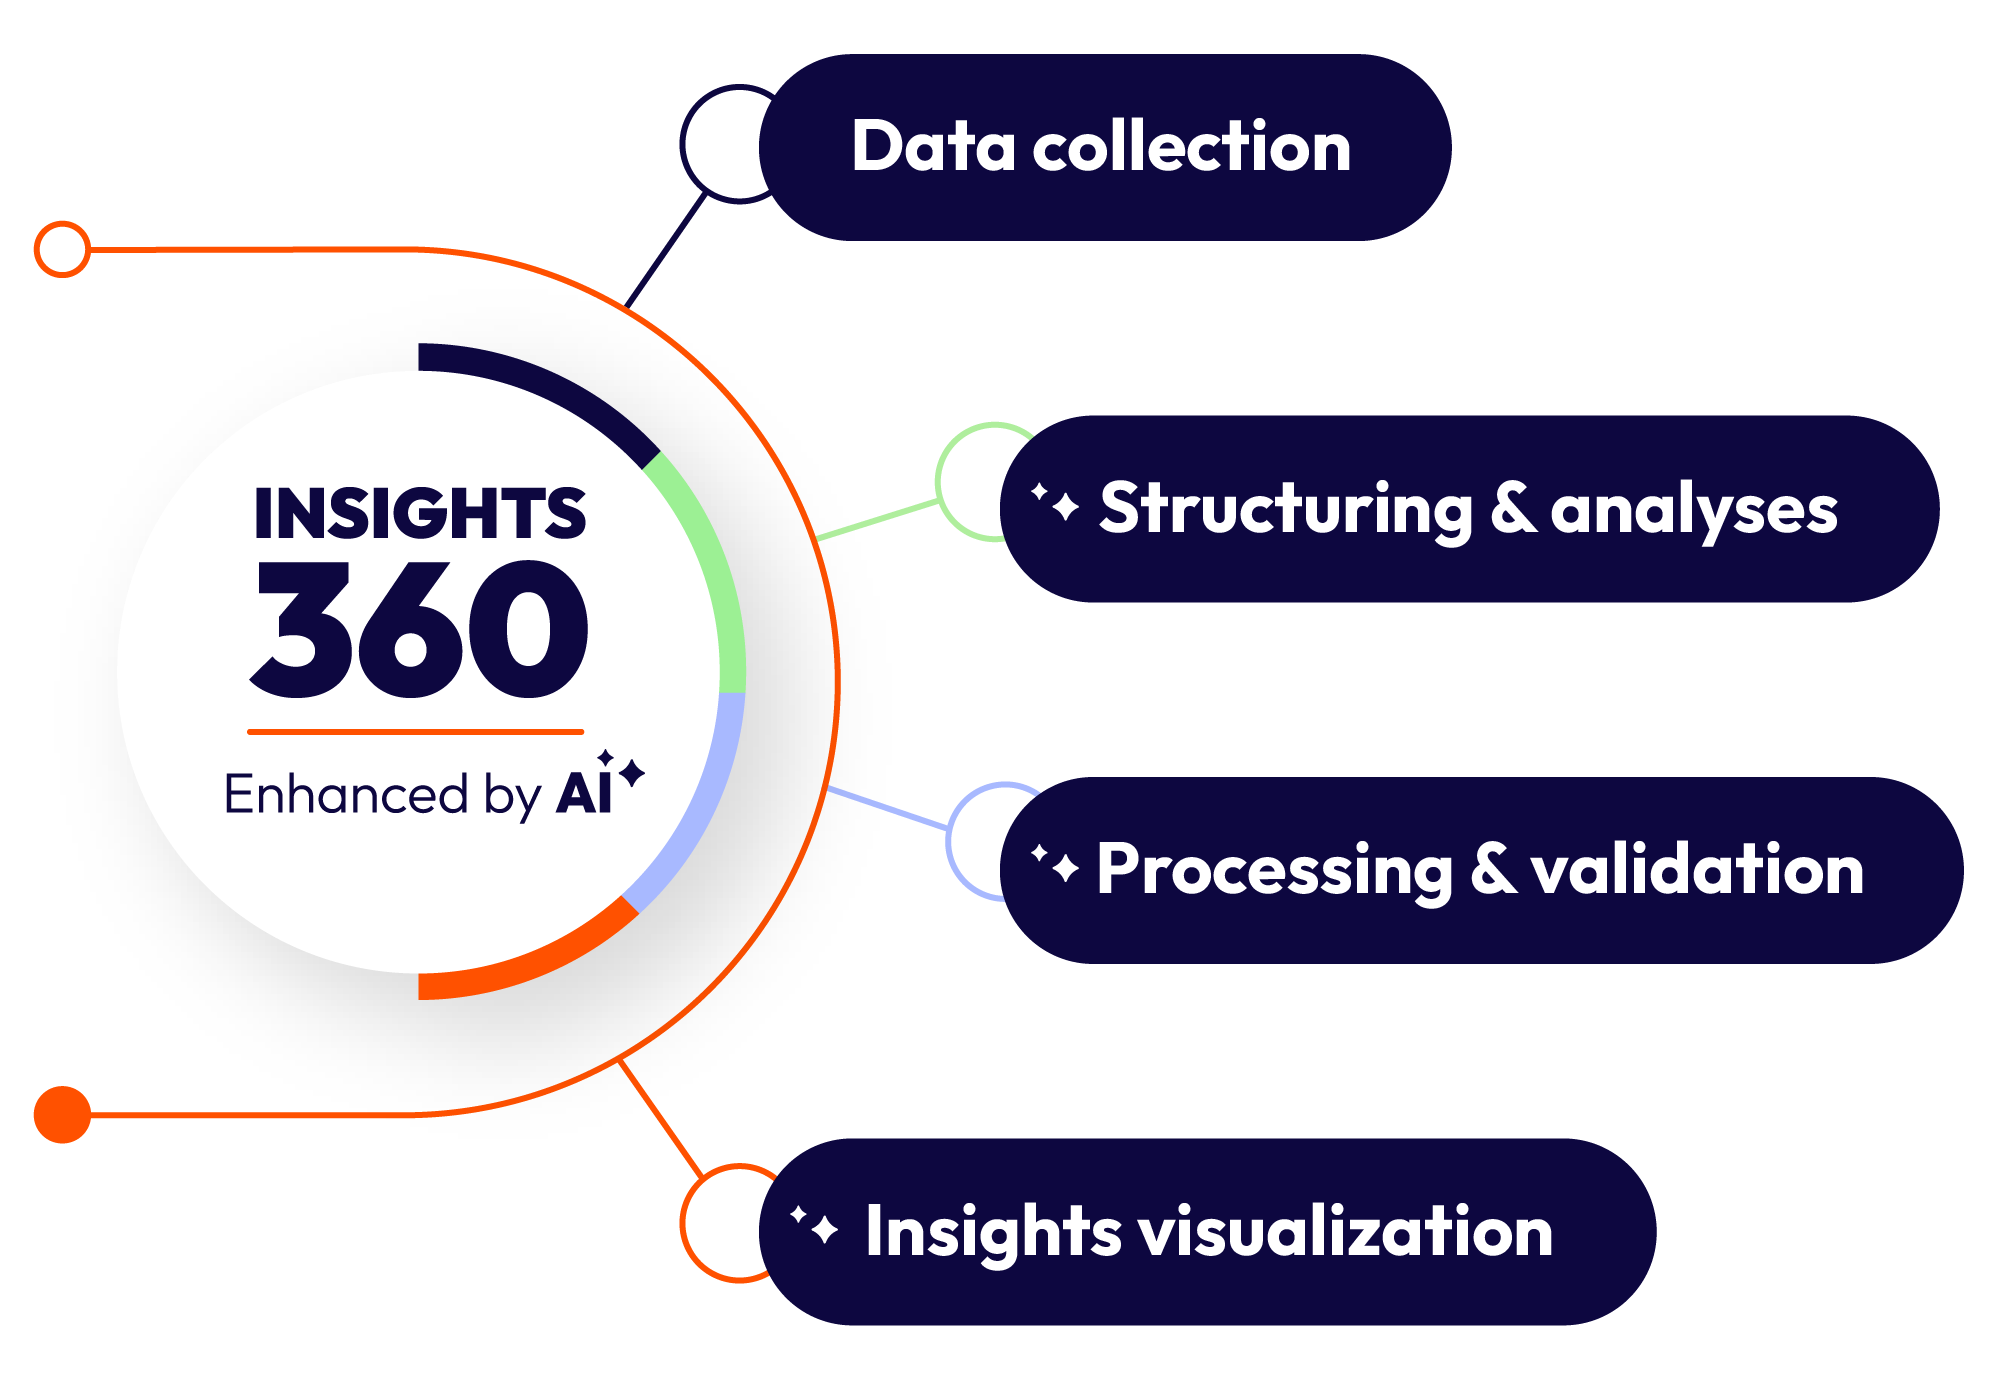 Image explaining the 'Insights 360'